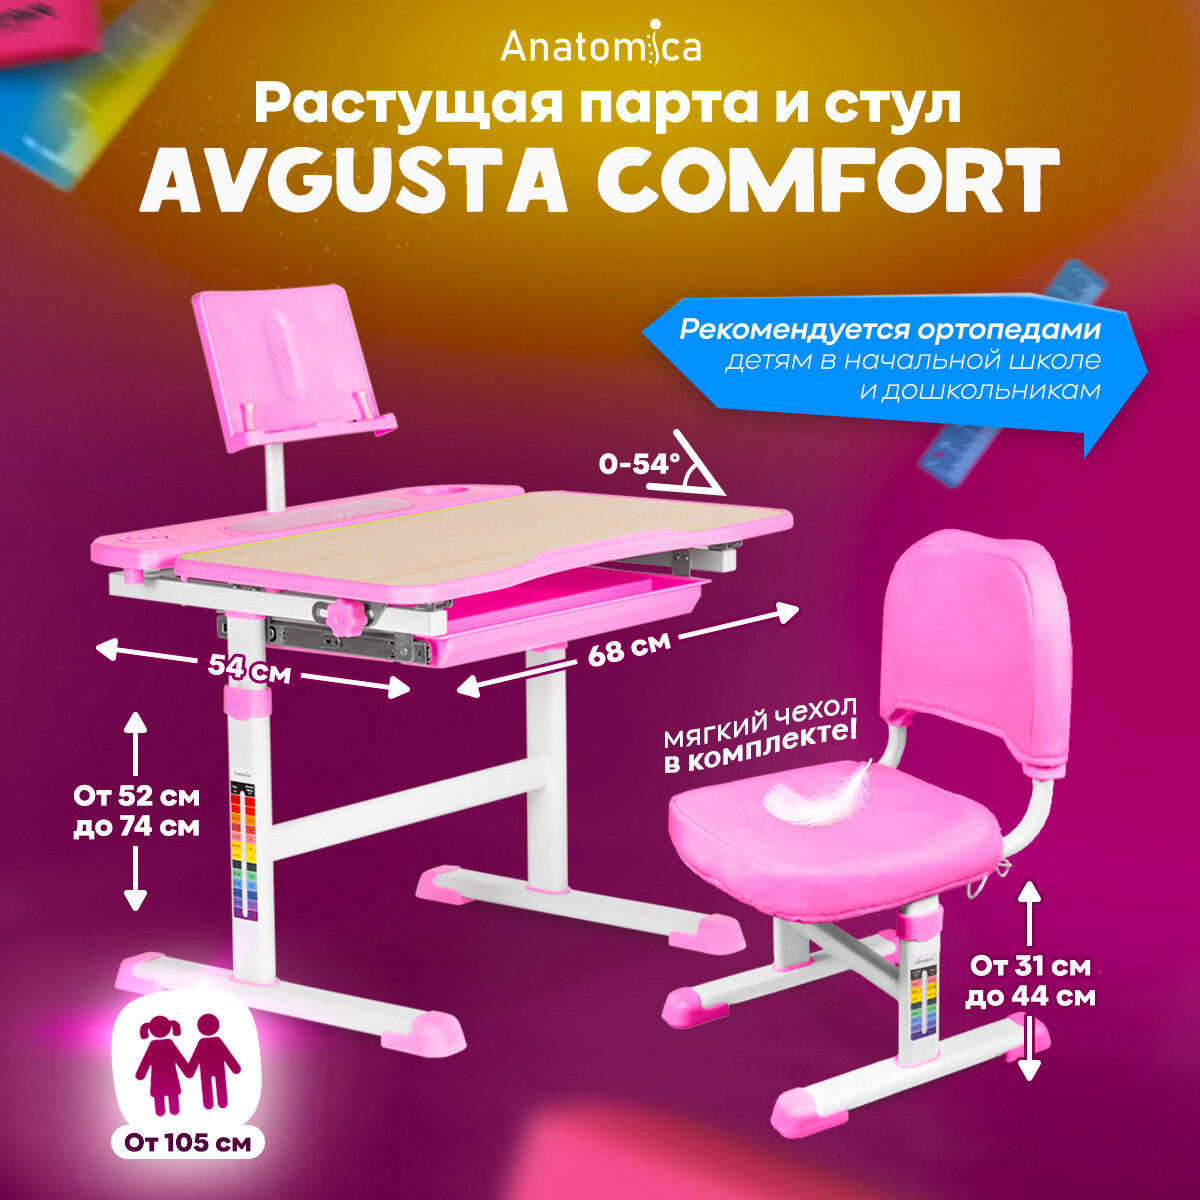 Комплект парта и стул Anatomica Avgusta Comfort клён/розовый